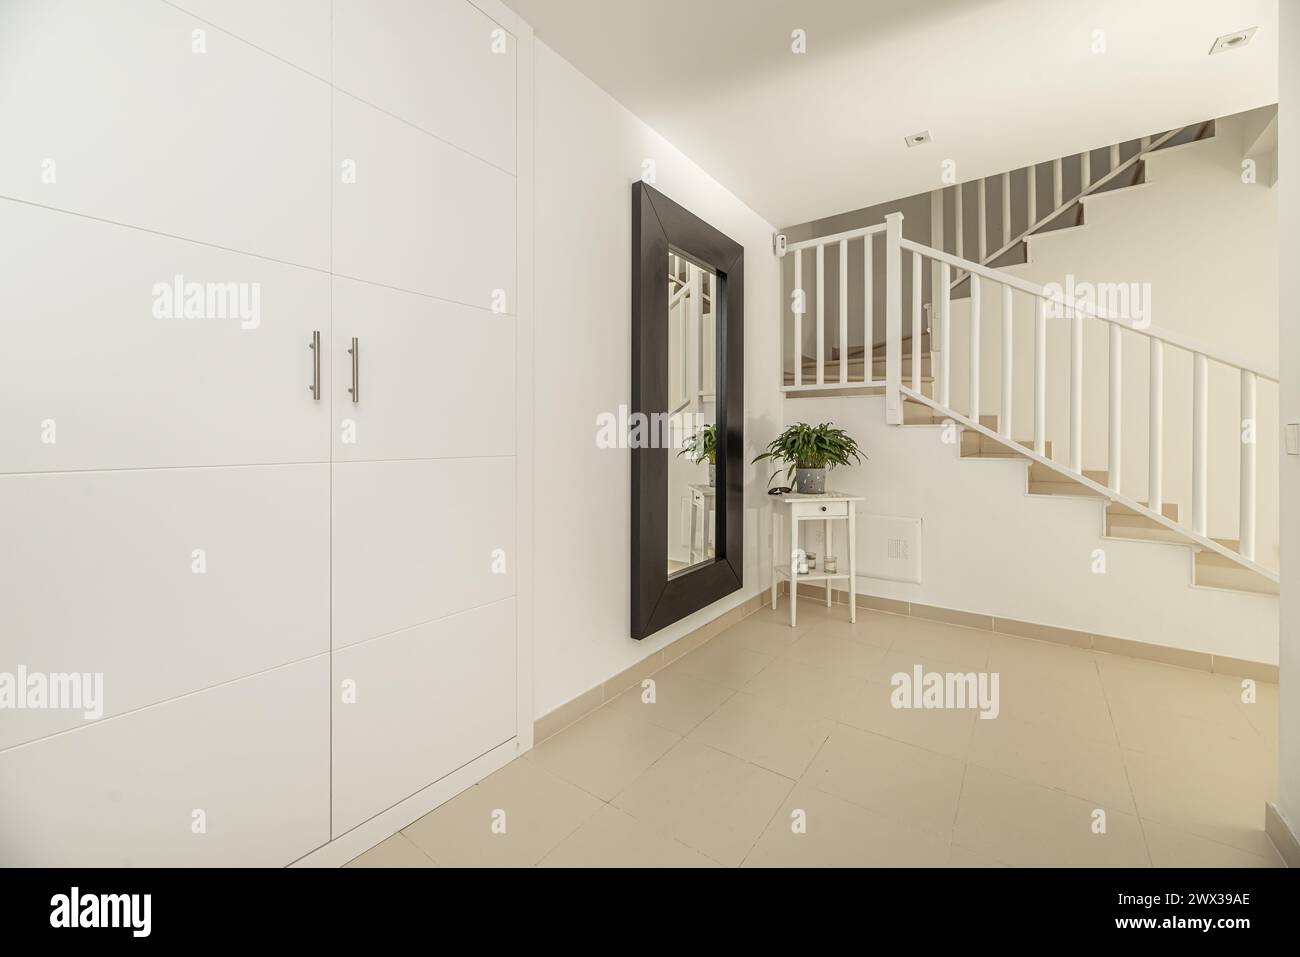 Flur eines mehrstöckigen Einfamilienhauses mit Einbauschränken, Treppen mit Metallgeländern und cremefarbenen Steinzeugböden Stockfoto